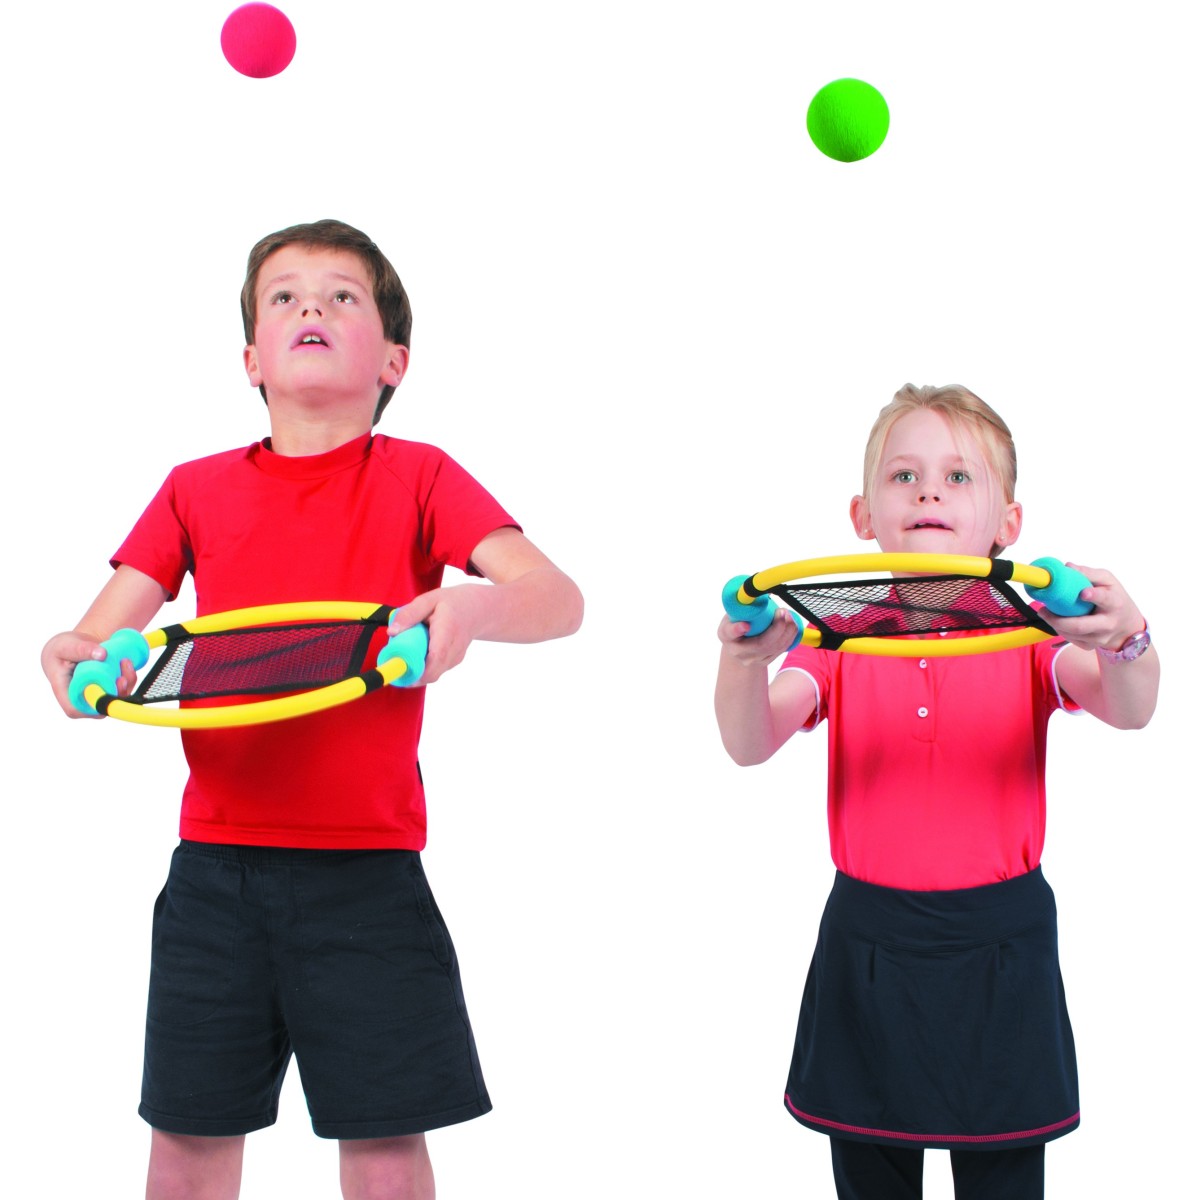 6 raquettes sauteuses trampoline pour faire rebondir les balles très facilement. Raquettes sauteuses adaptées aux enfants